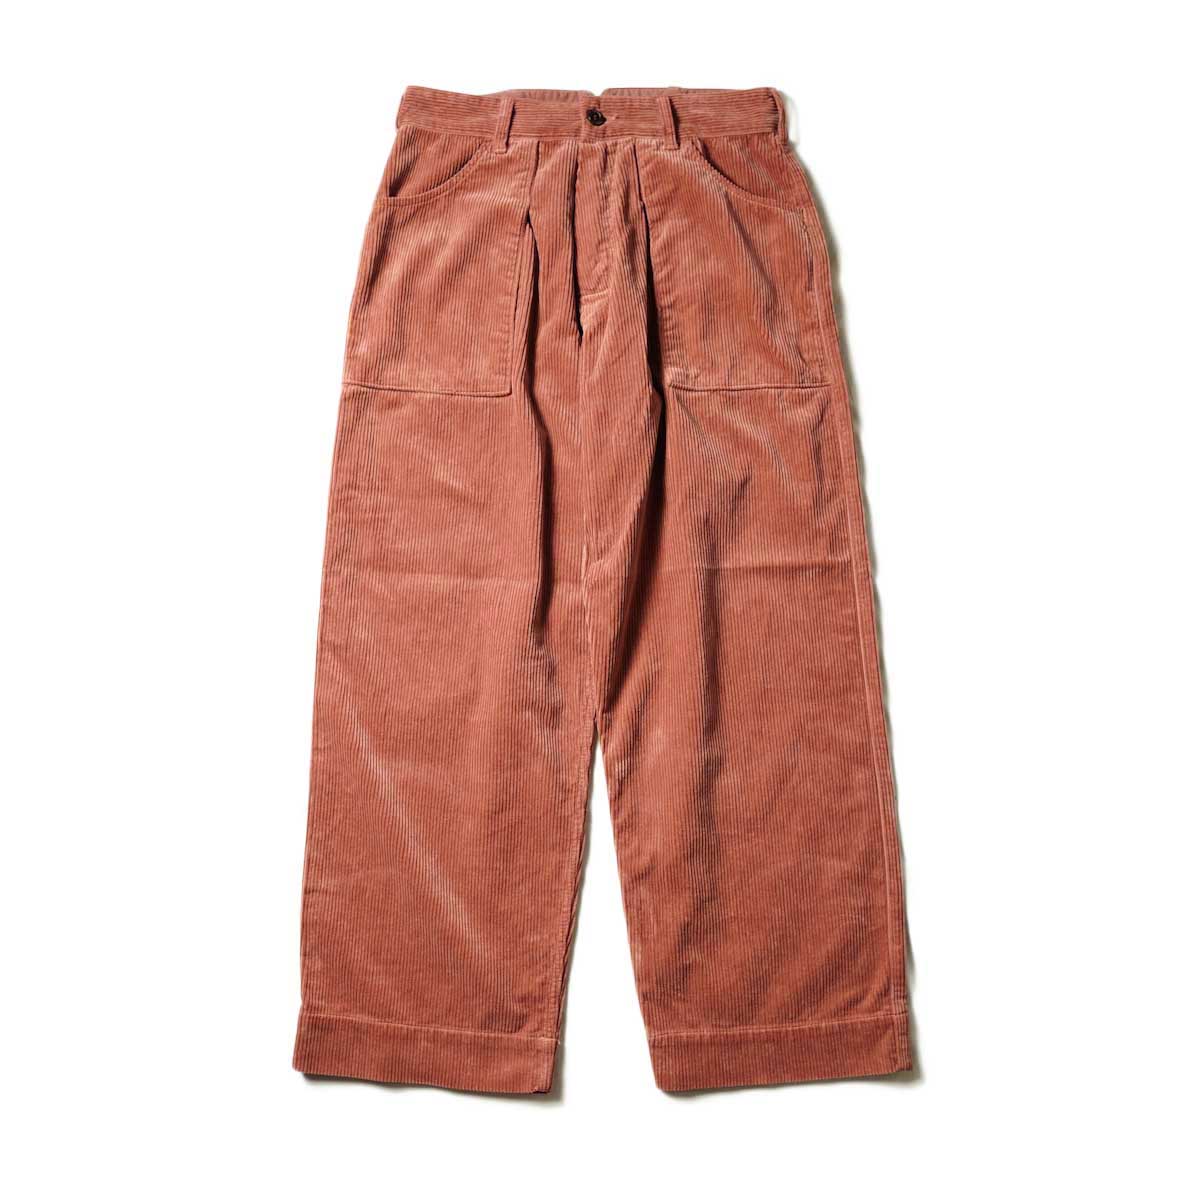 willow pants easy short ウィローパンツ ショーパン - パンツ